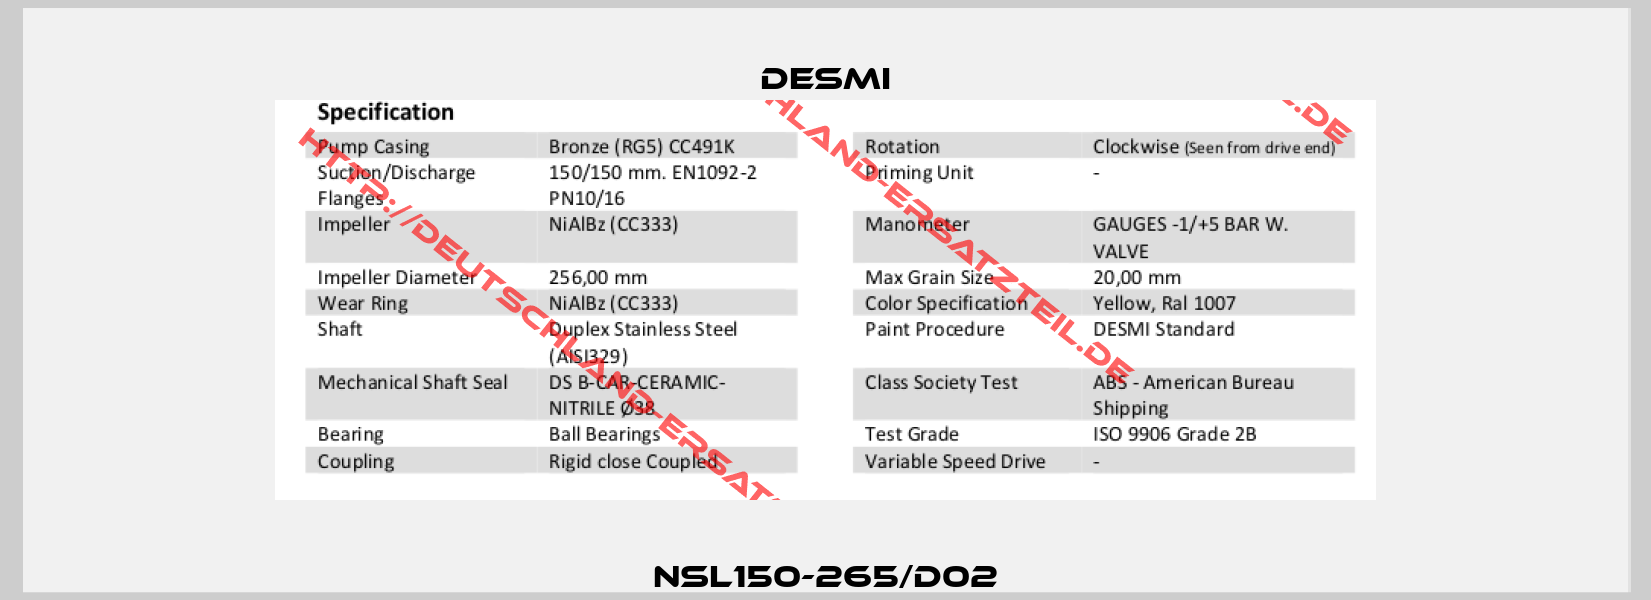 NSL150-265/D02-3